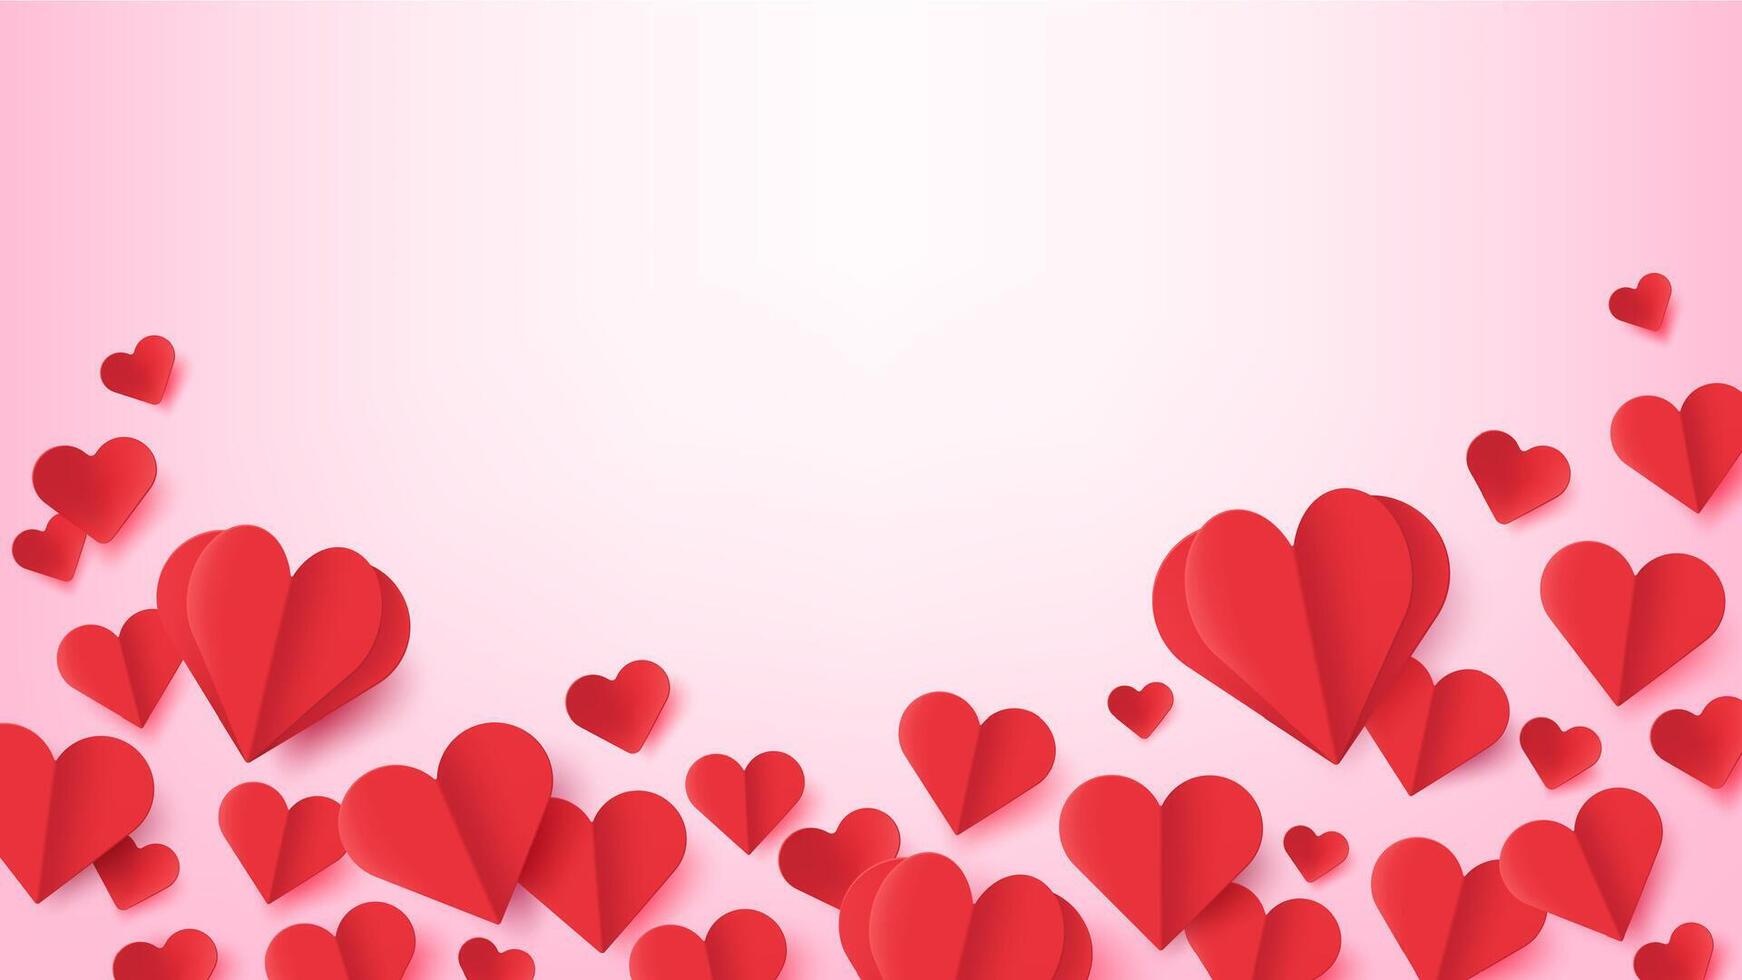 papper hjärtan. valentines dag affisch med flygande röd hjärta formad origami med skugga. kärlek symboler. bröllop eller årsdag vektor hälsning